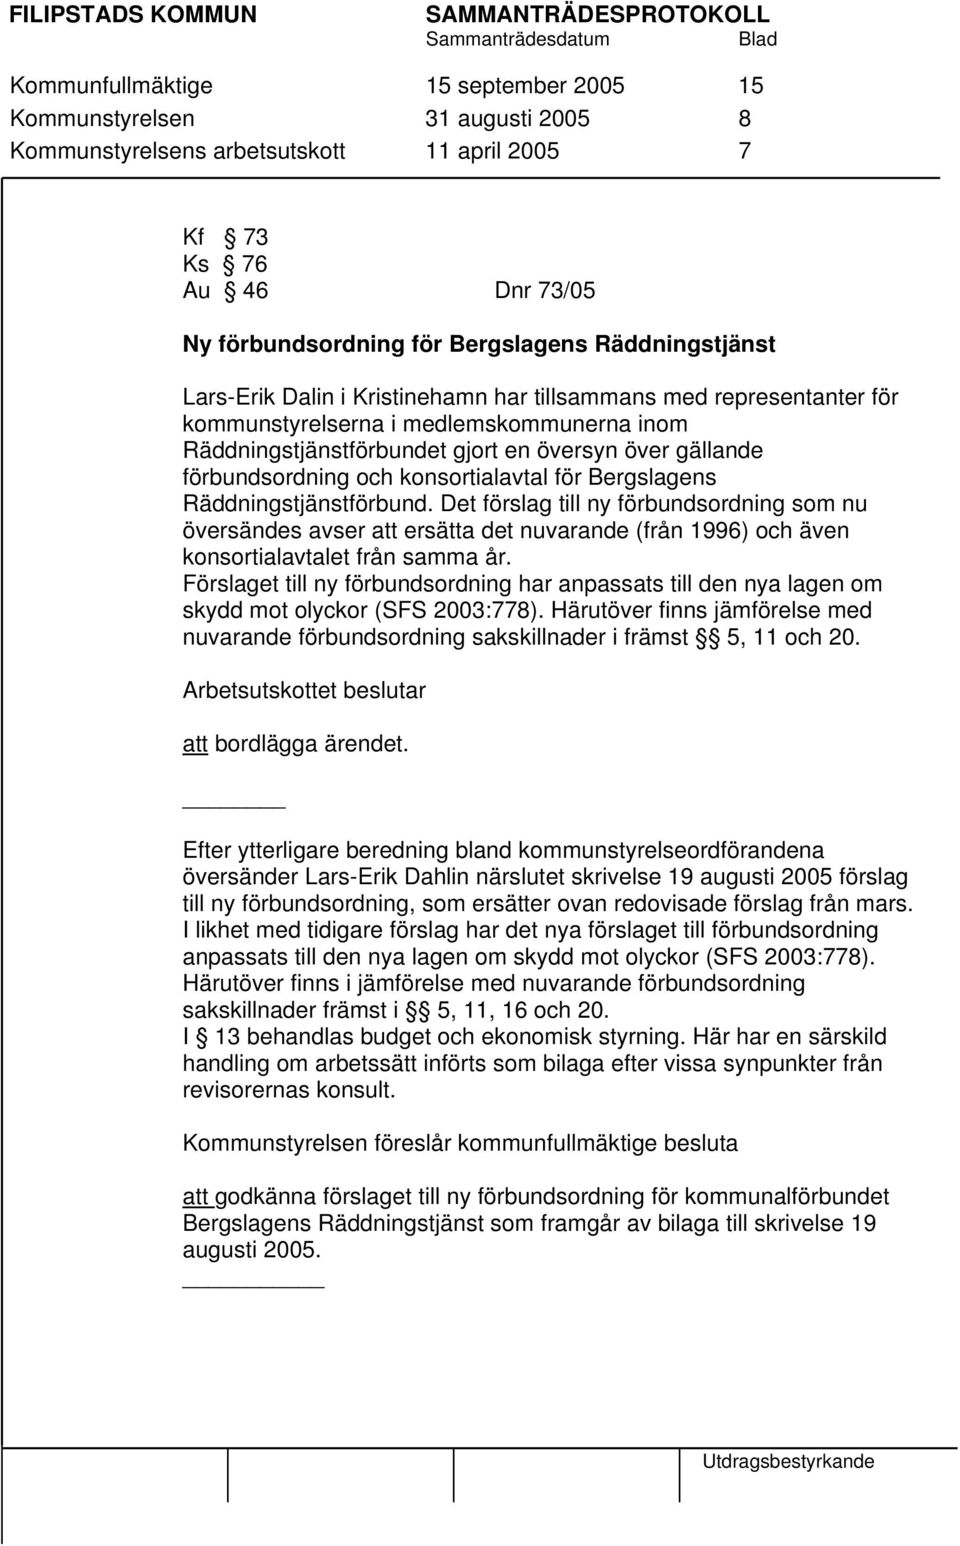 konsortialavtal för Bergslagens Räddningstjänstförbund. Det förslag till ny förbundsordning som nu översändes avser att ersätta det nuvarande (från 1996) och även konsortialavtalet från samma år.